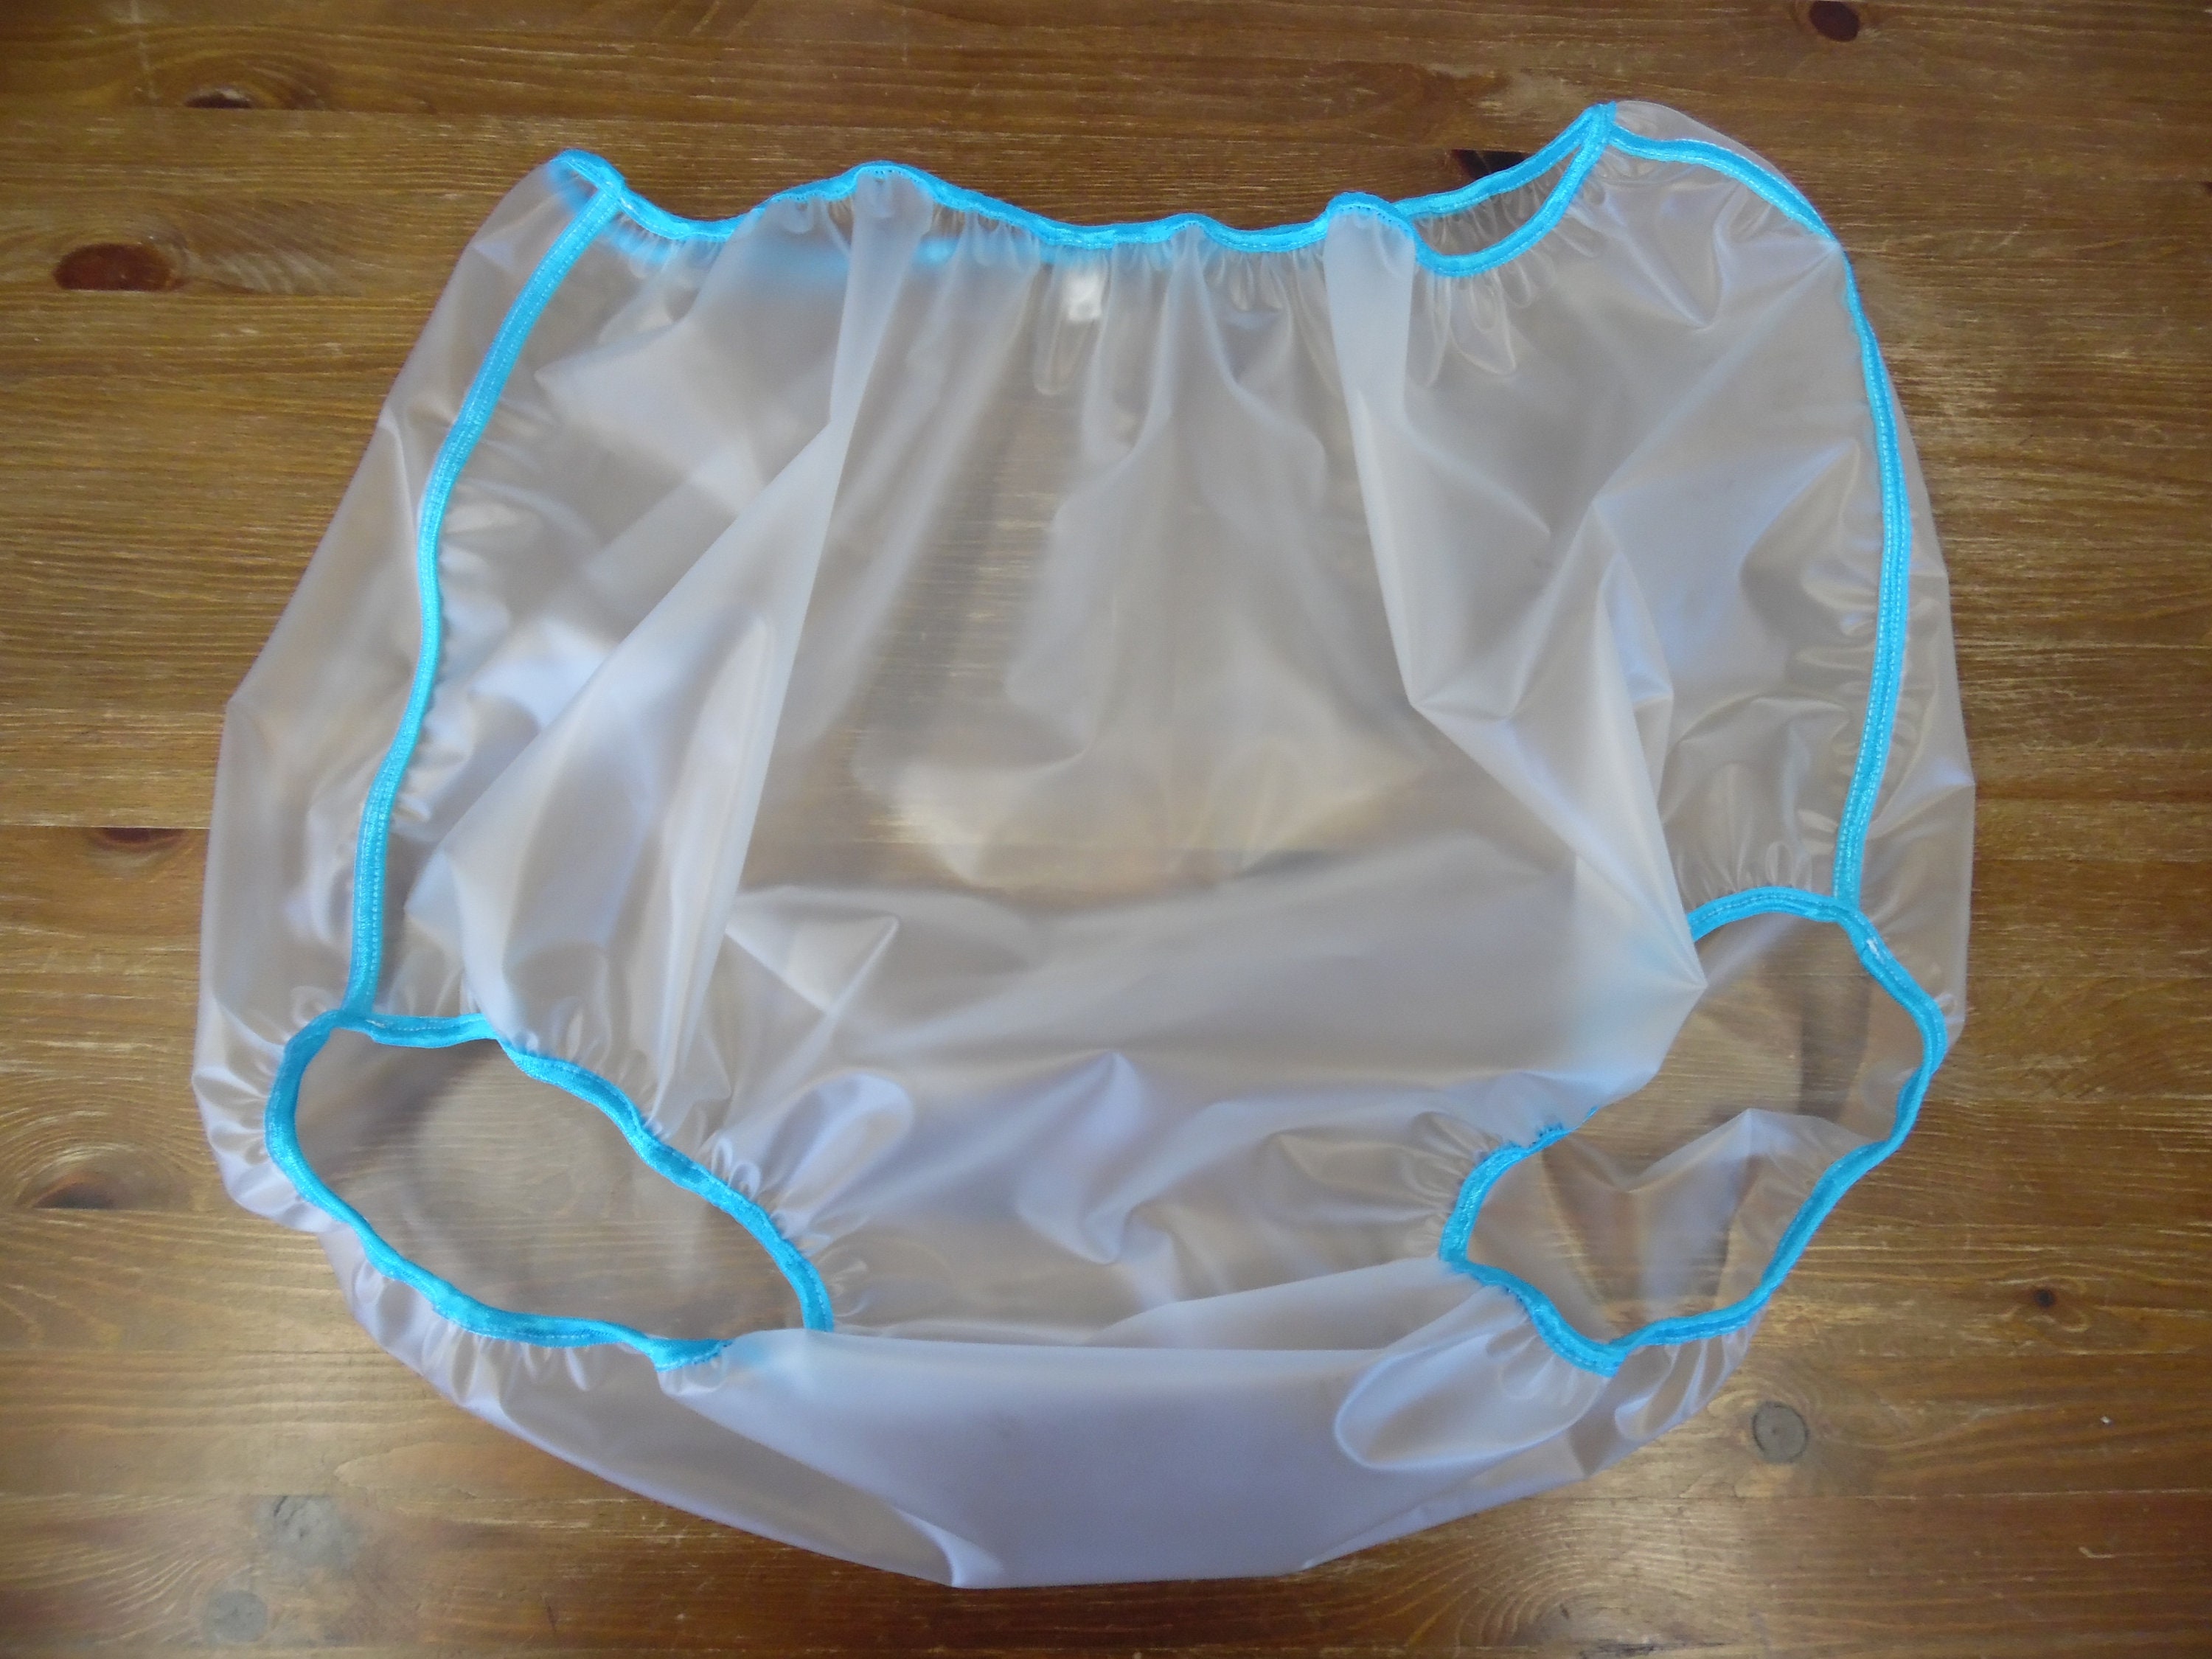 Plastic Diaper Cover -  Canada